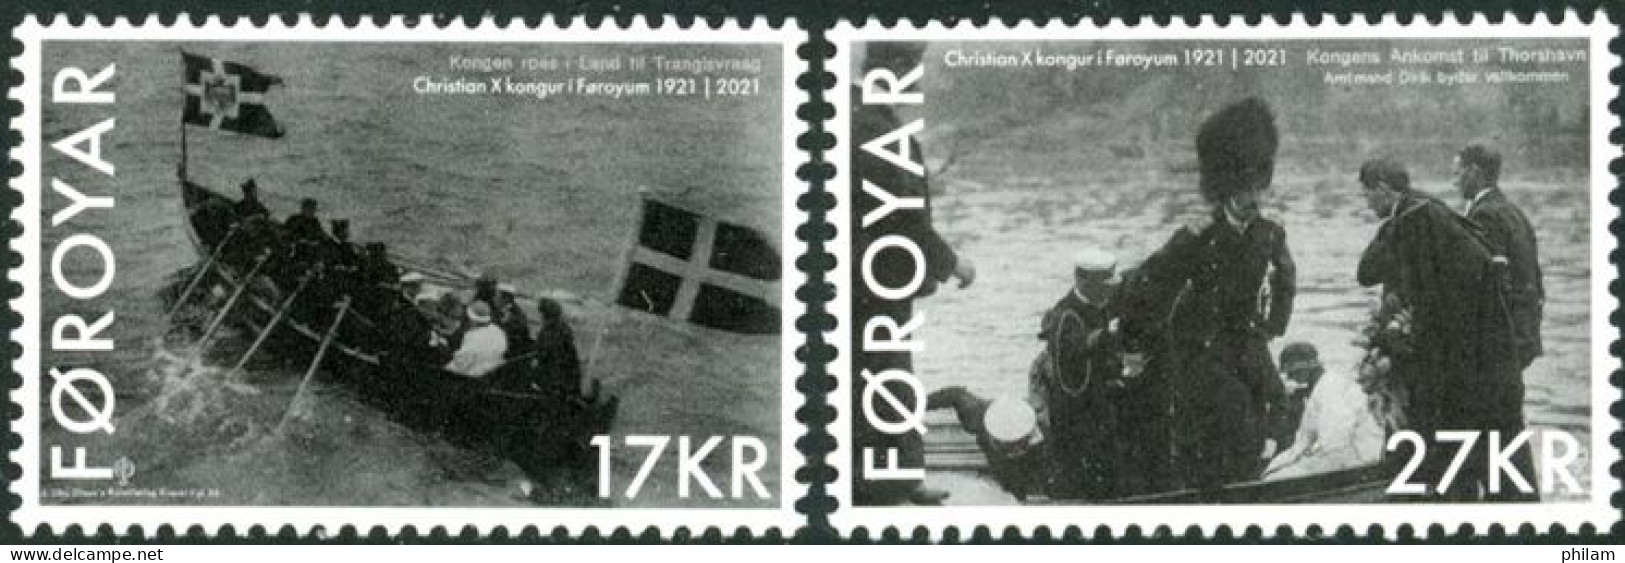 FEROES 2021 - Visite Royale 1921 - 2 V. - Faroe Islands